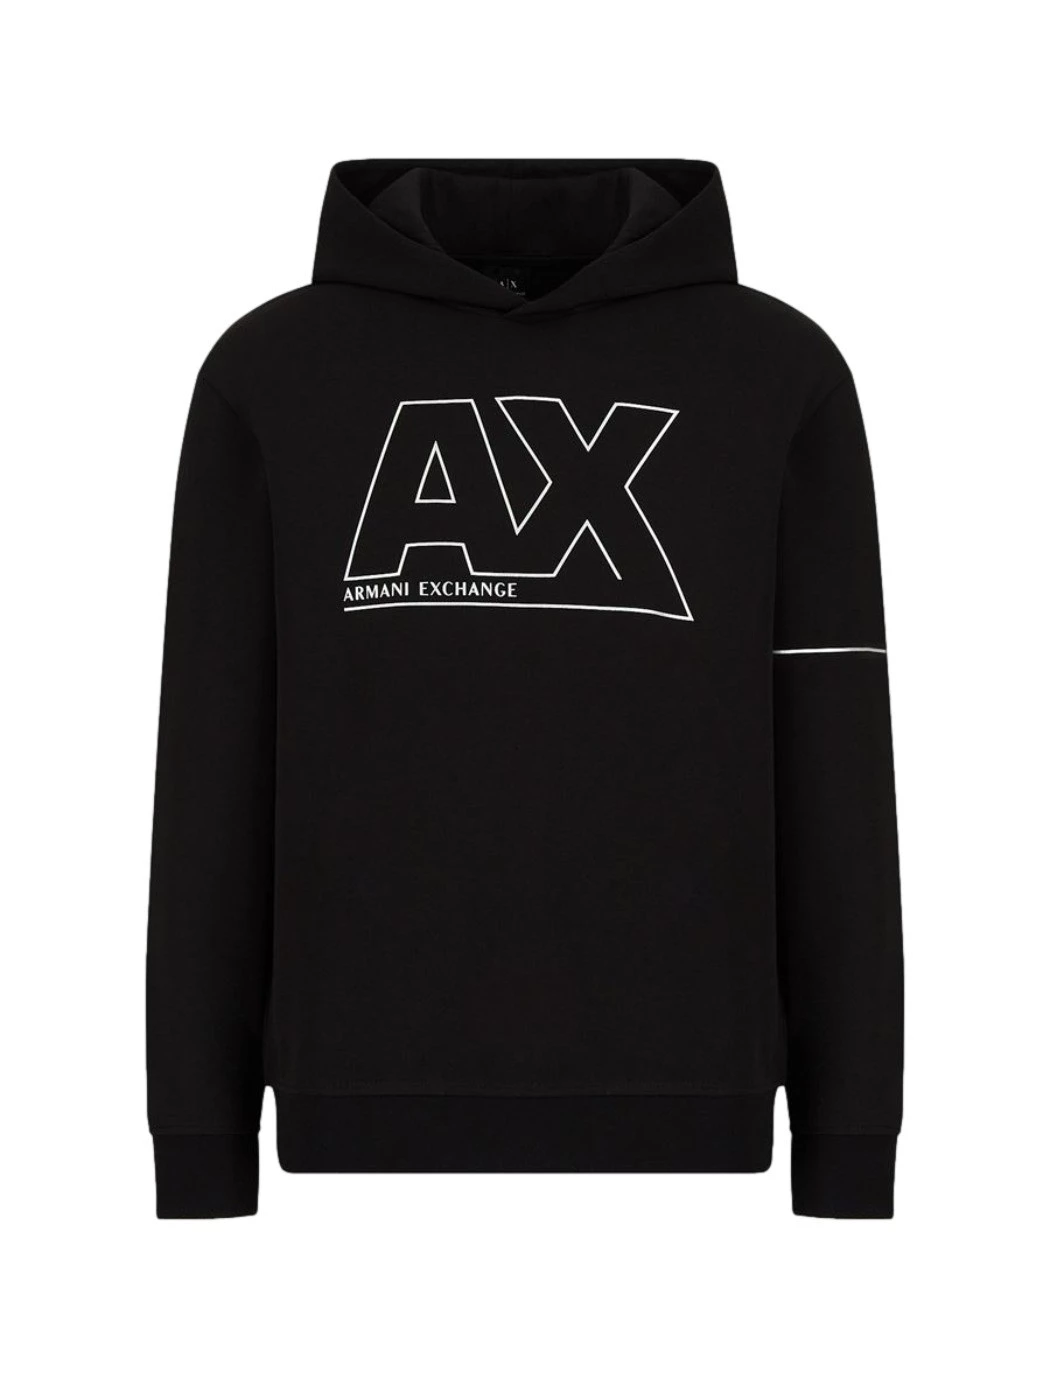 Fullzip sweatshirt with Armani Exchange shiny metal logo and det